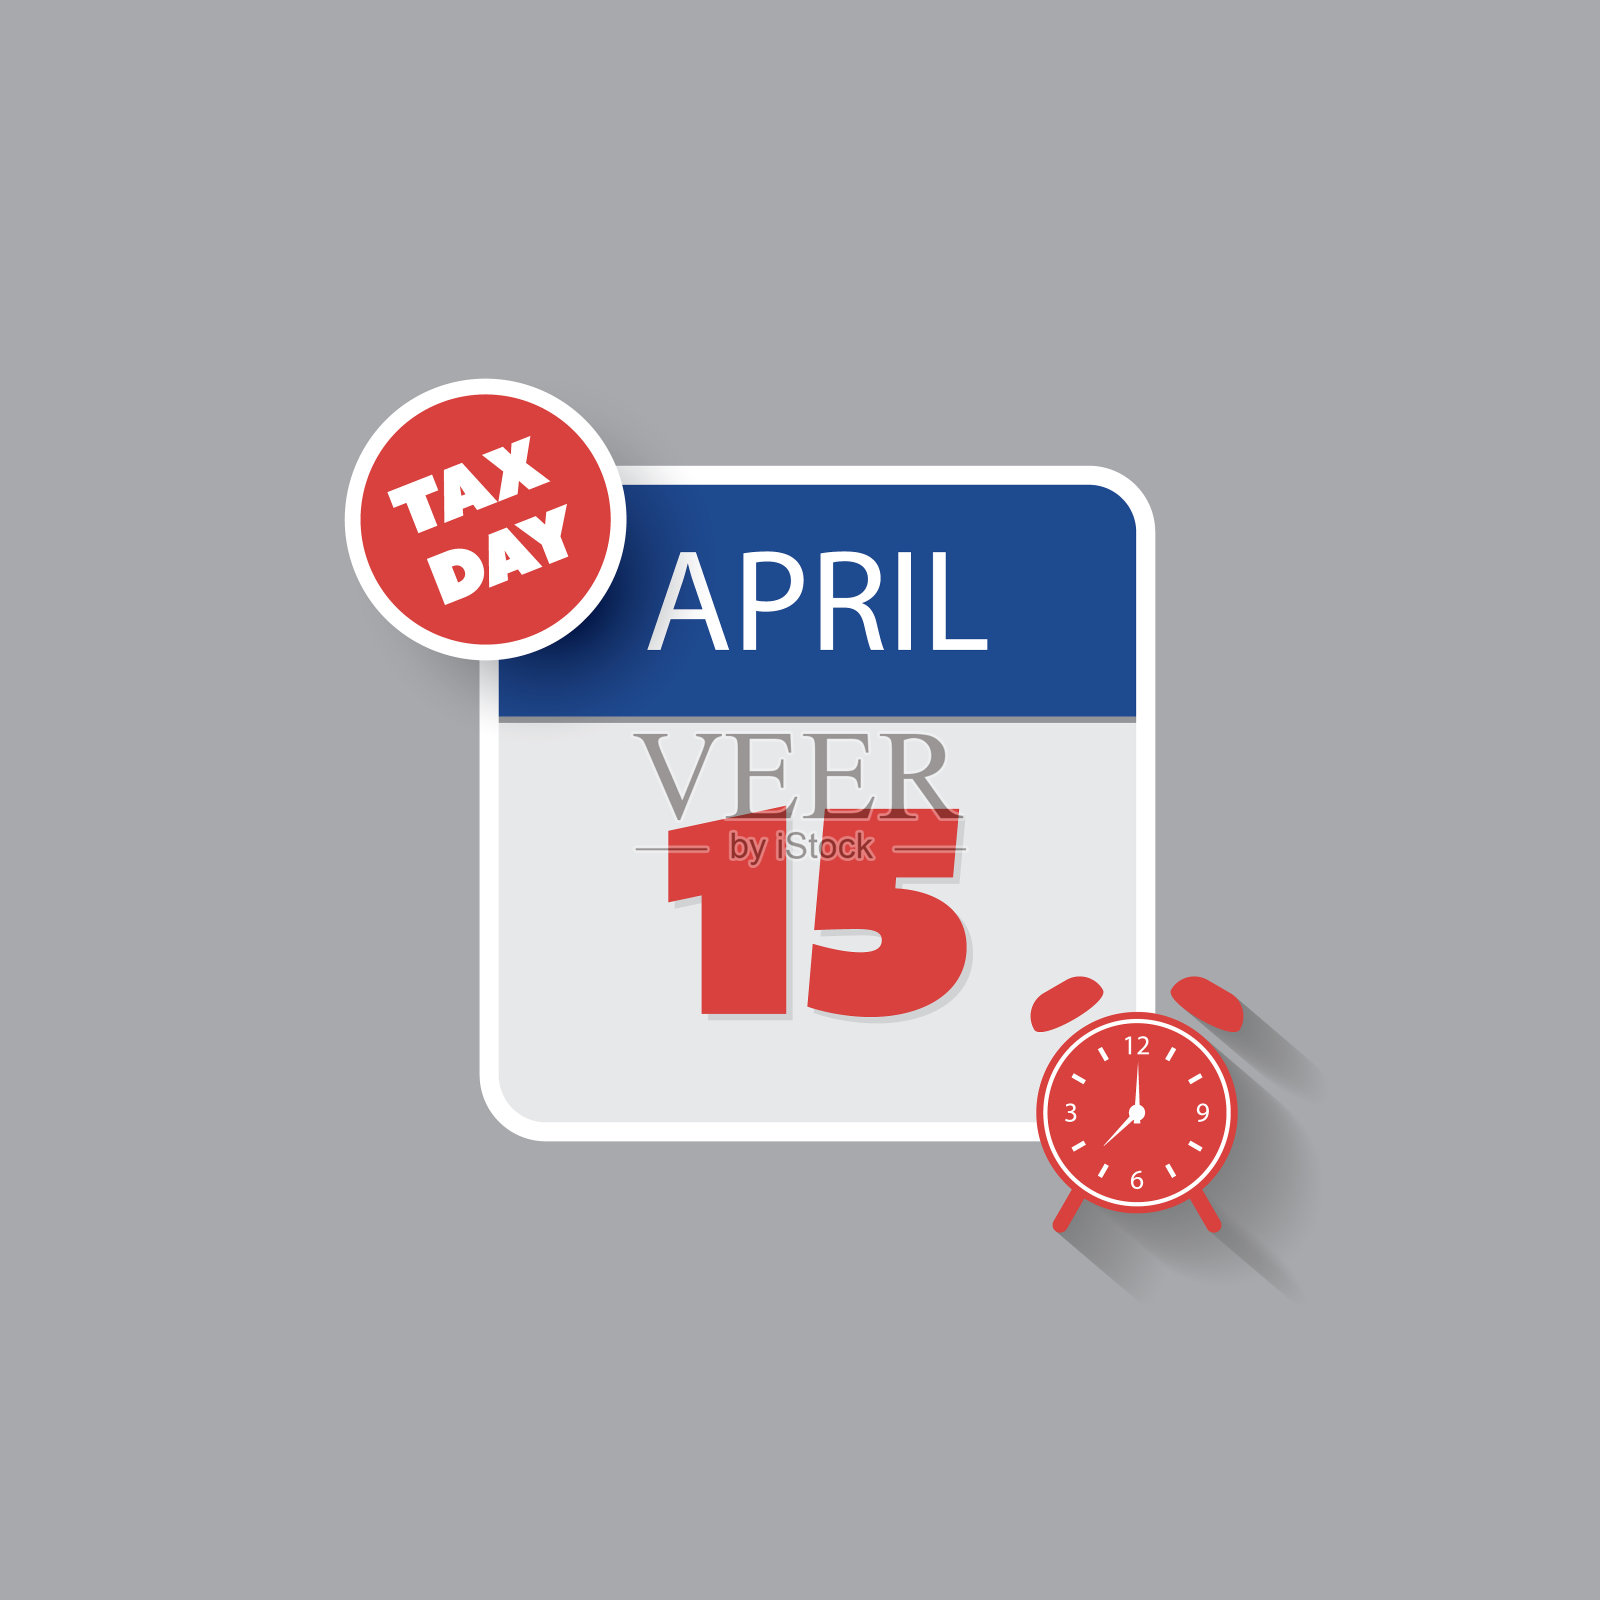 美国税务日概念-日历设计模板2020设计模板素材